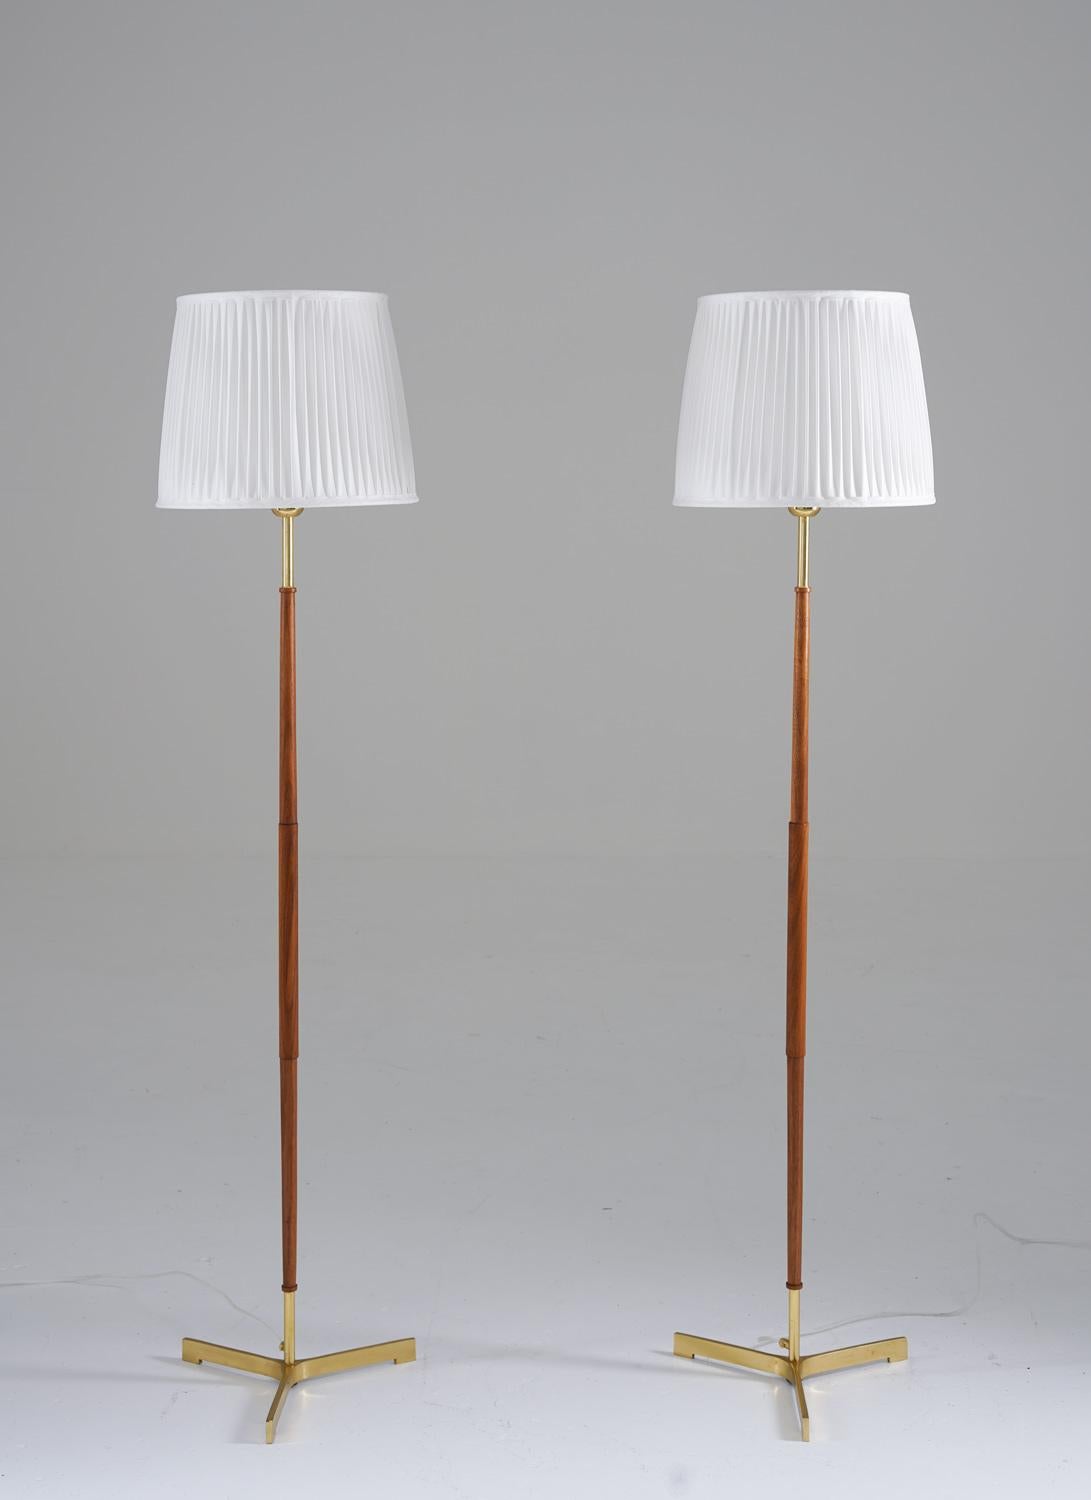 Lampadaires tripodes scandinaves du milieu du siècle en laiton et bois, fabriqués en Suède, années 1960.
Ces lampes se composent d'une base en bois et en laiton, reposant sur un pied tripode en laiton massif. Ils sont livrés avec de nouveaux